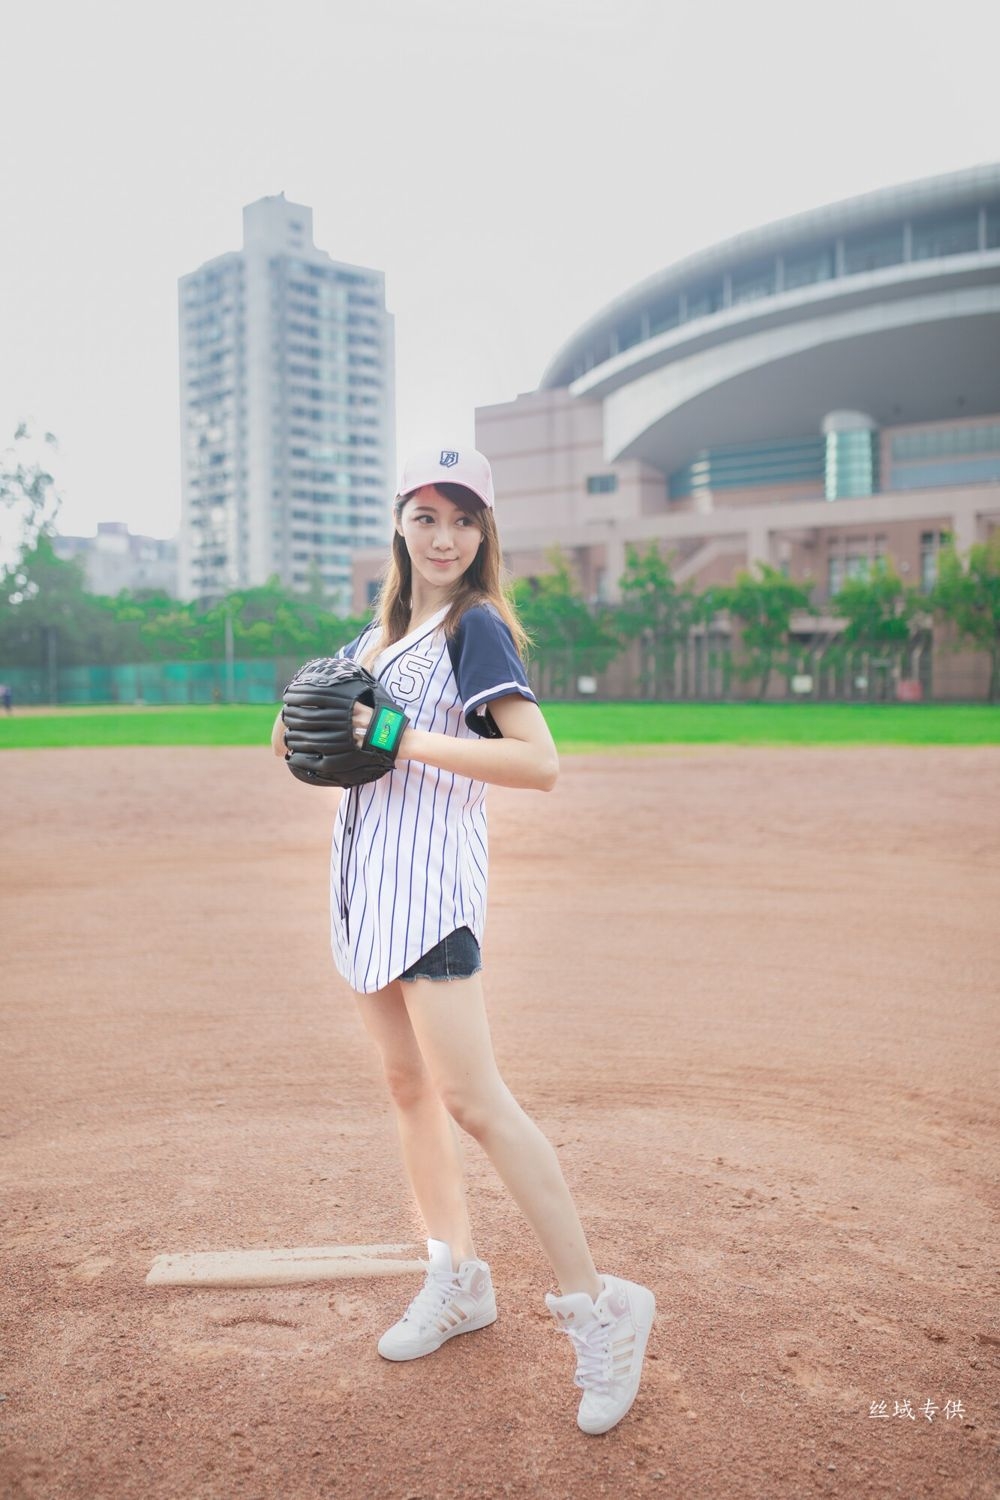 靓丽台湾妹化身足球宝贝青春活力性感美女图片